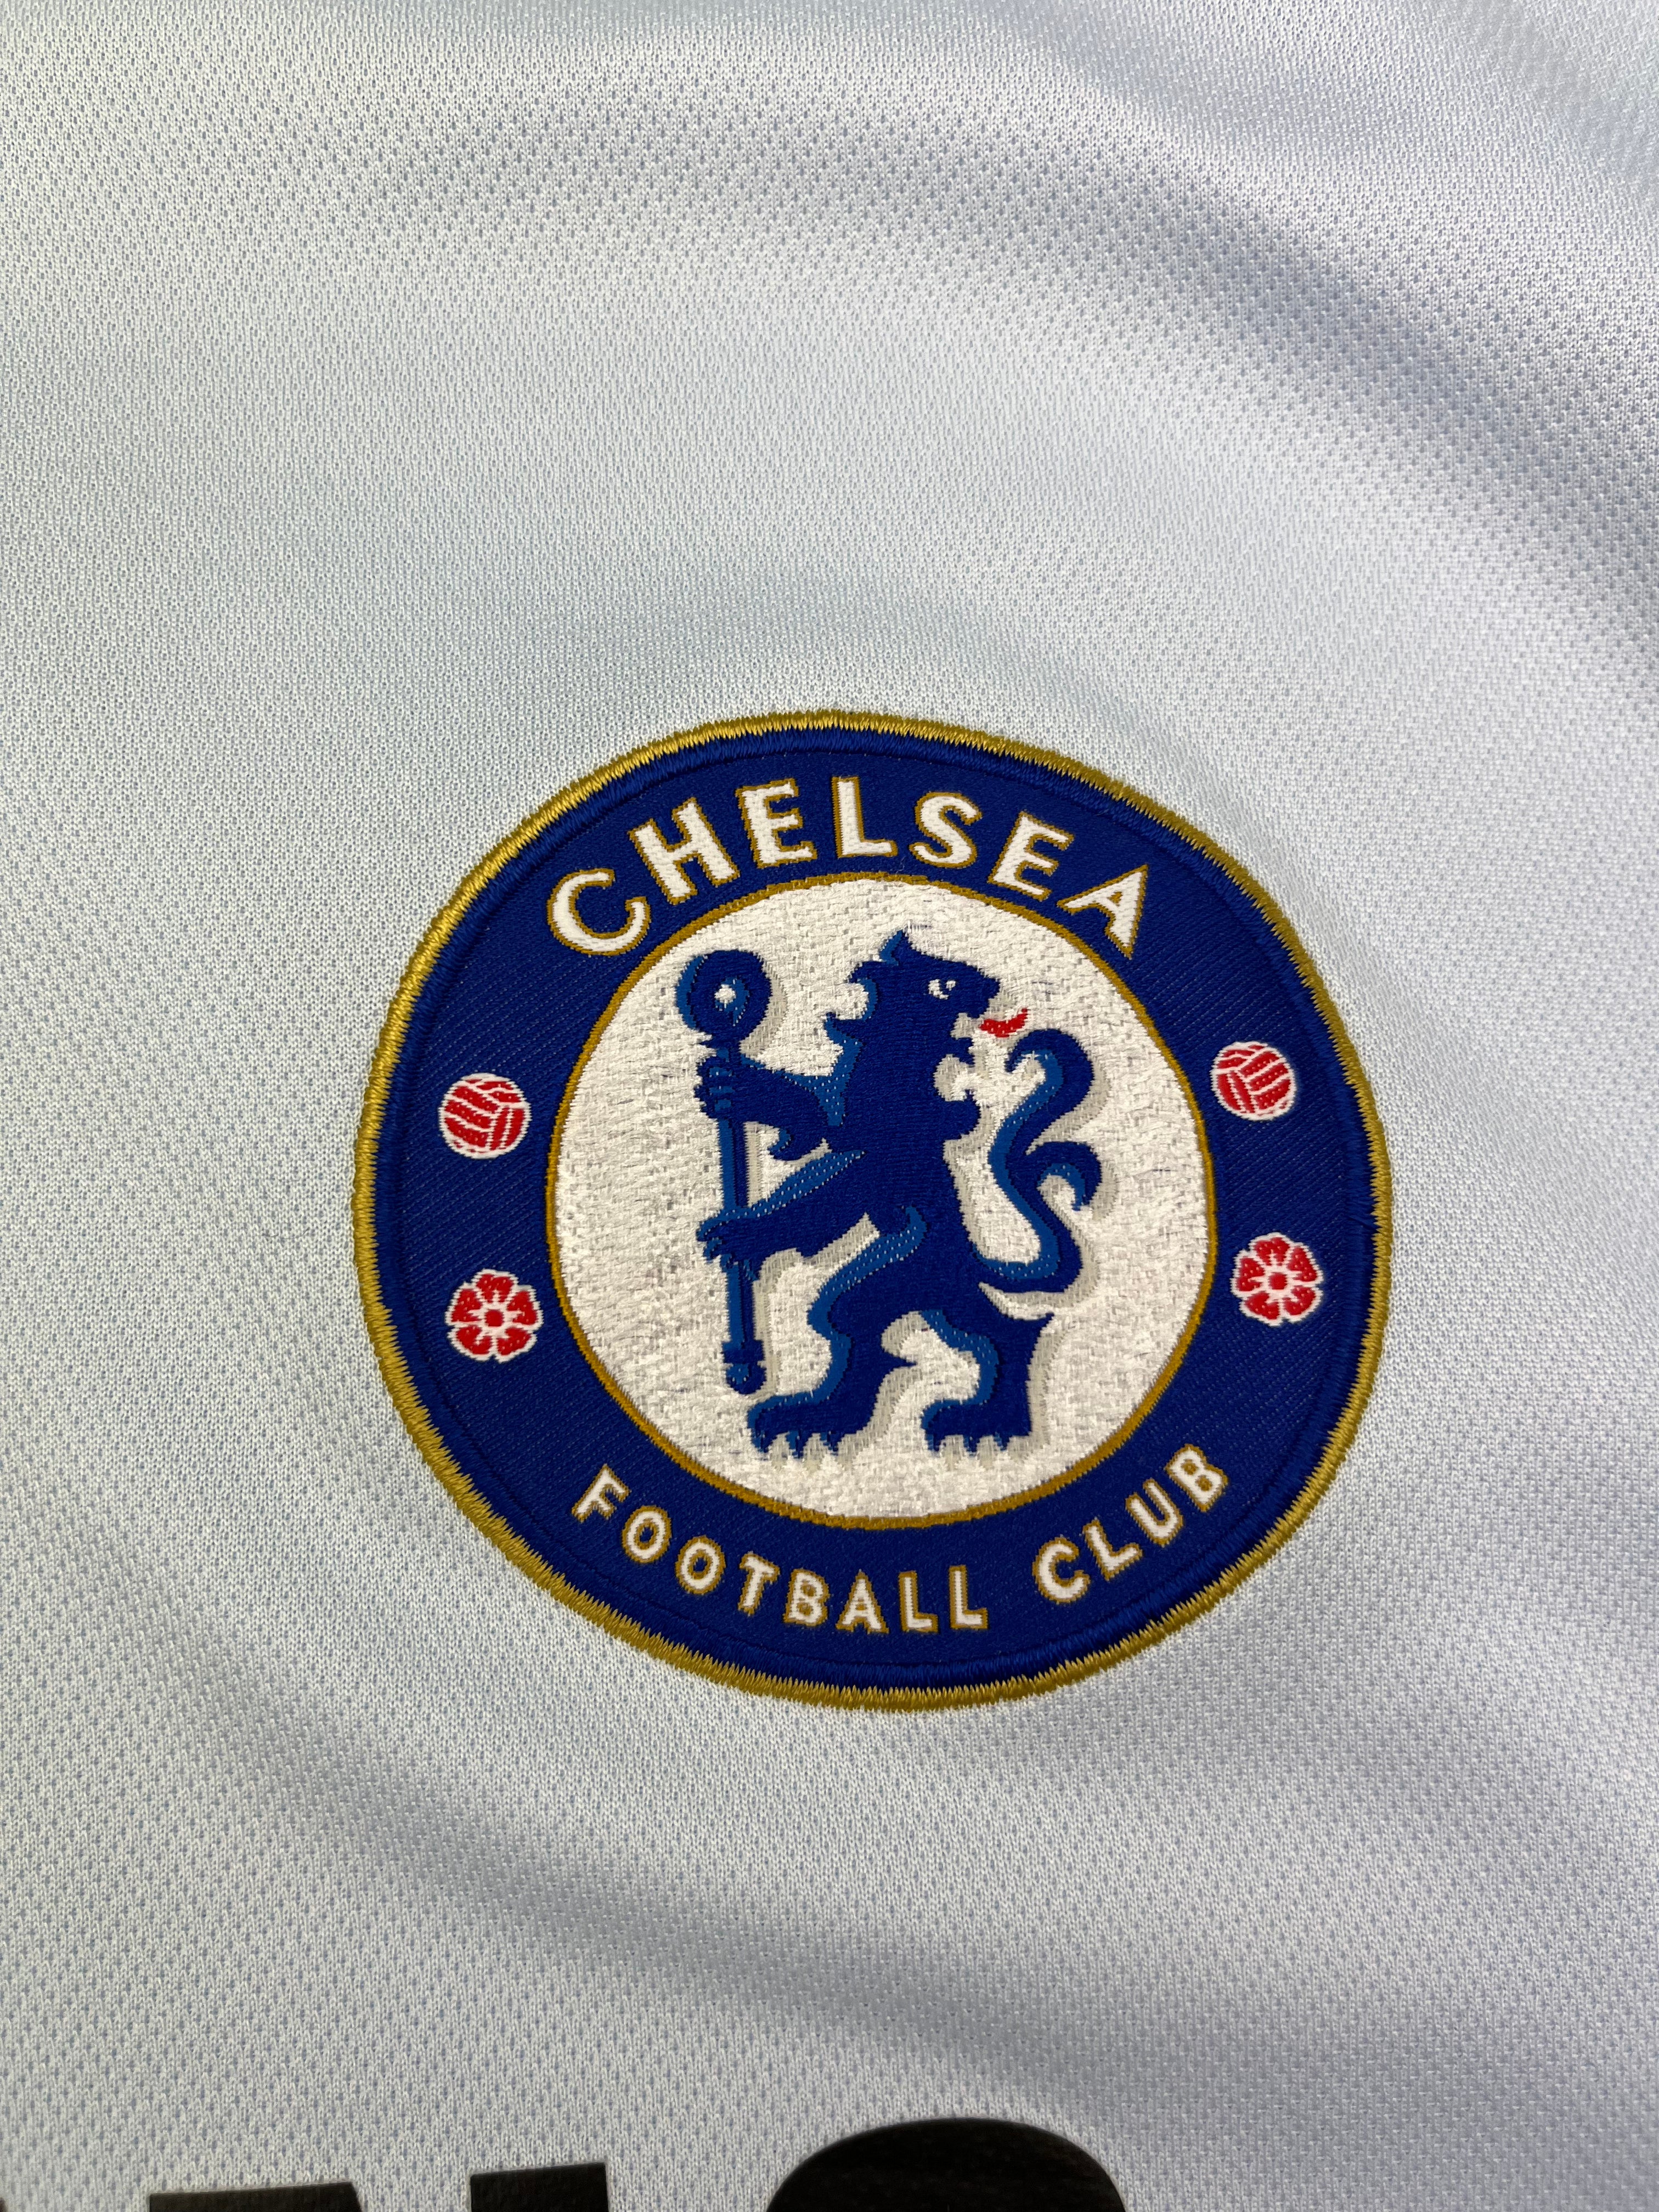 2005/06 Chelsea Away Shirt (3XL) 7.5/10